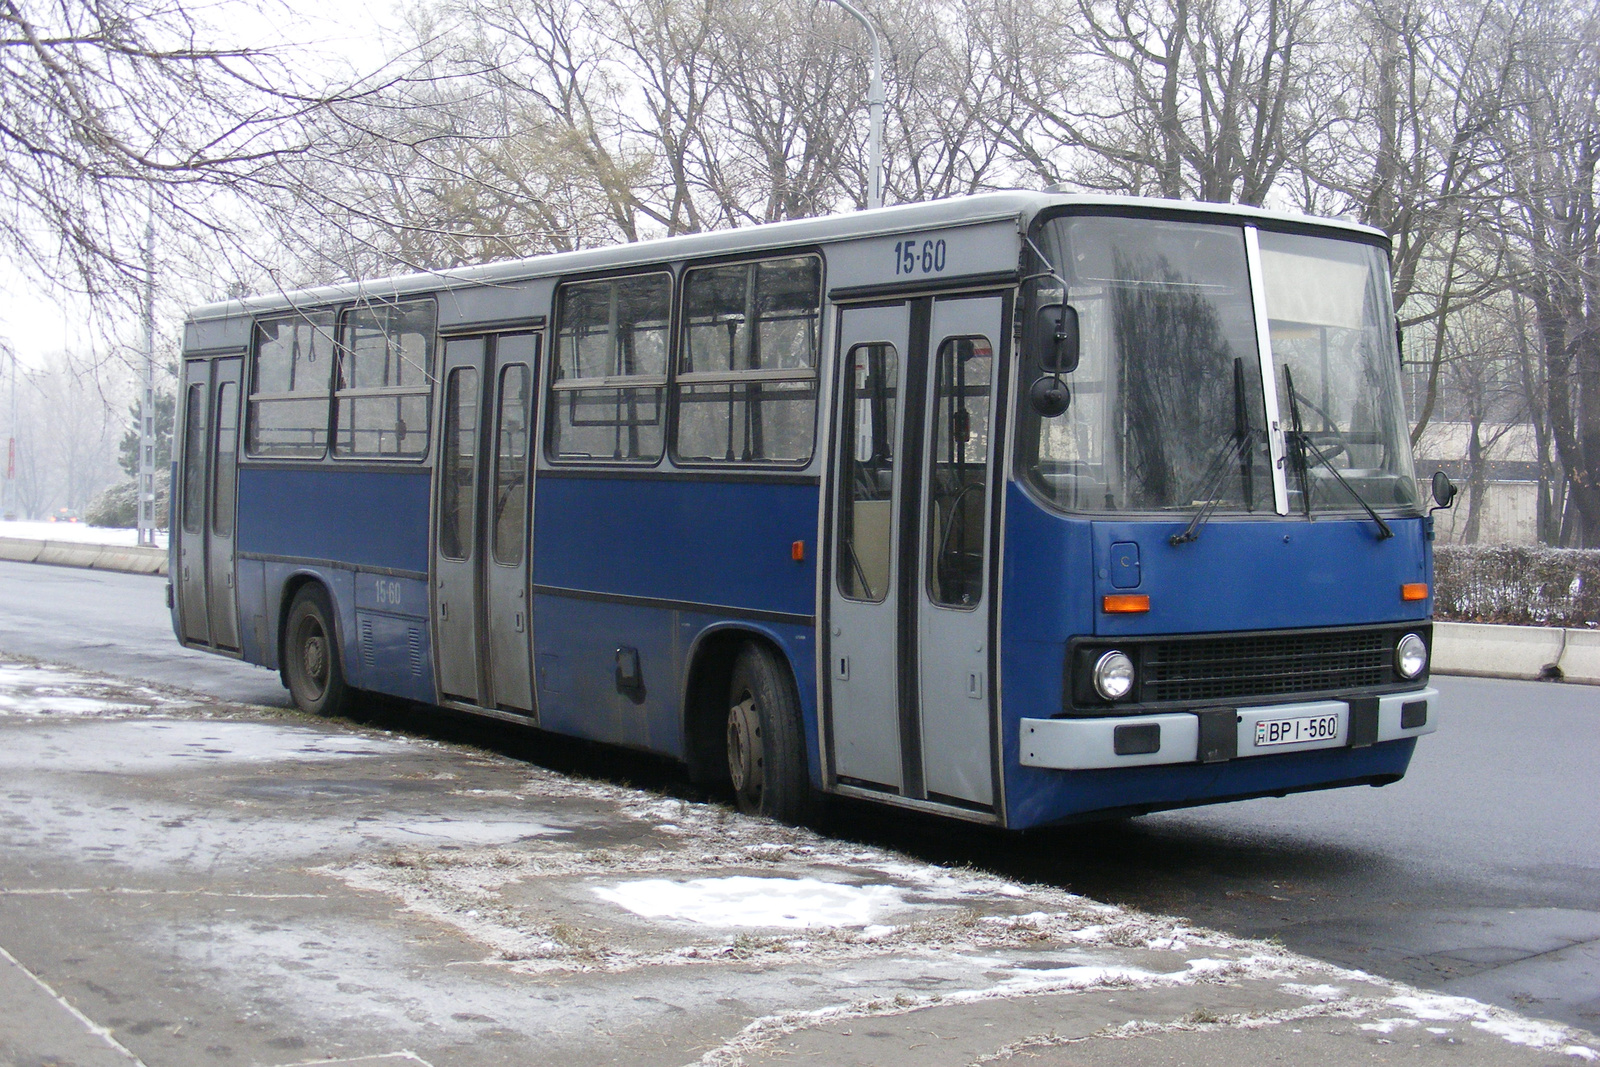 Busz BPI-560